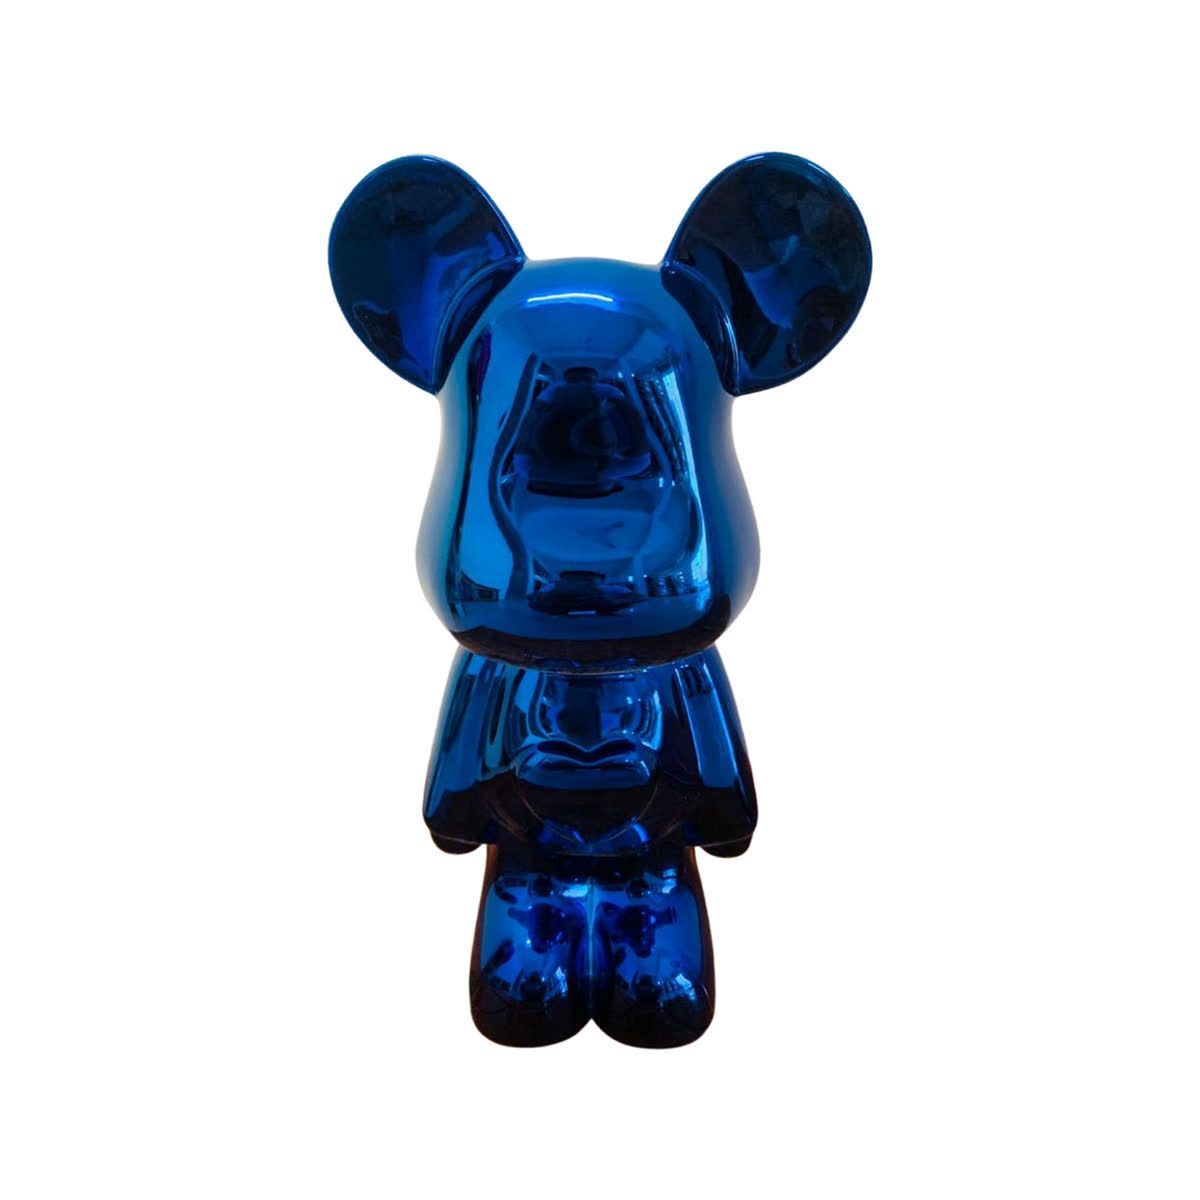 Null BRAIN ROY (MR&ROY, Né en 1980)

Sculpture Blue Bear

Sculpture en résine ch&hellip;